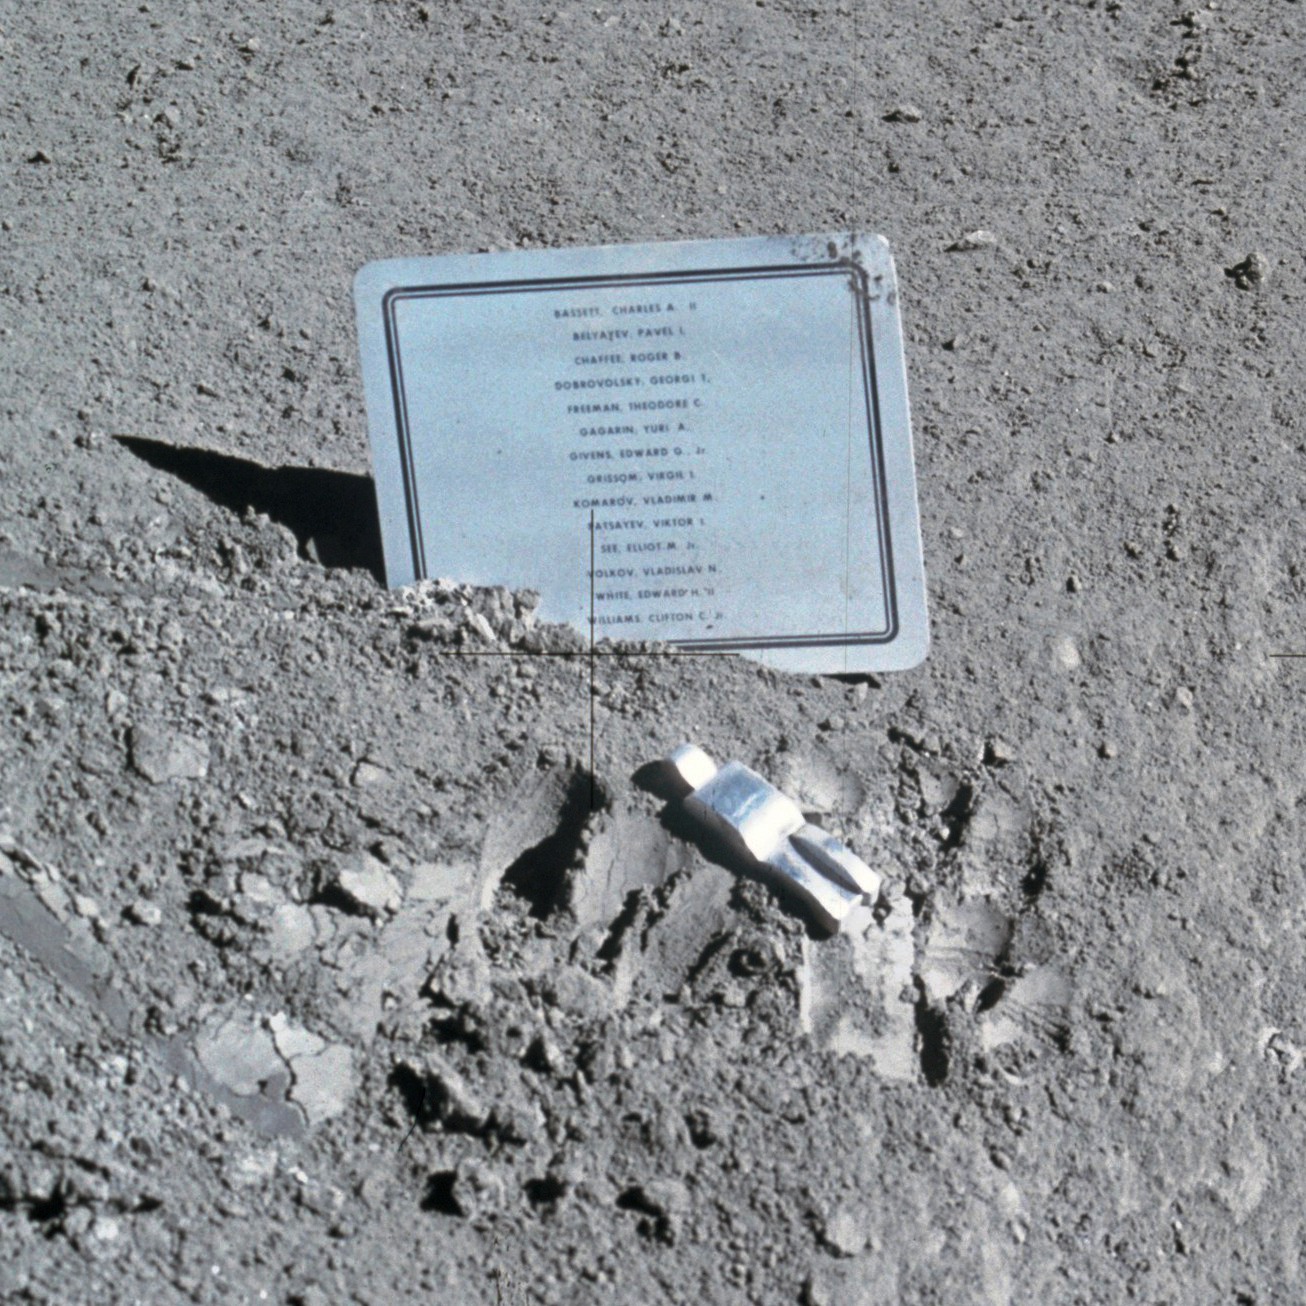 El homenaje en la luna a los astronautas desaparecidos